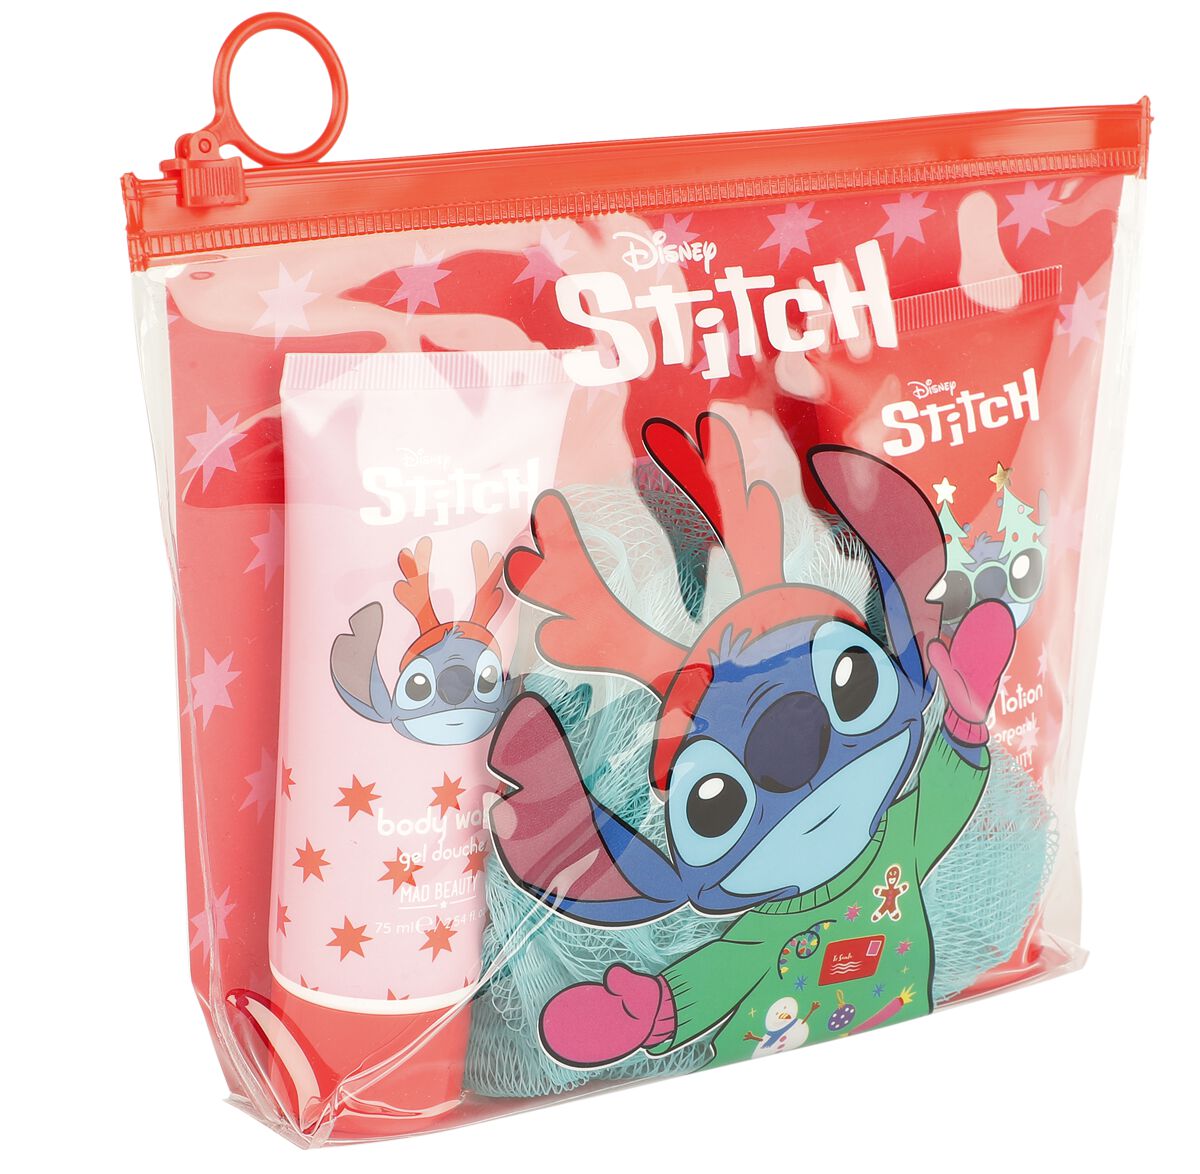 Lilo & Stitch - Disney Pflegeset - Mad Beauty - Stitch - Geschenkset - für Damen   - Lizenzierter Fanartikel product